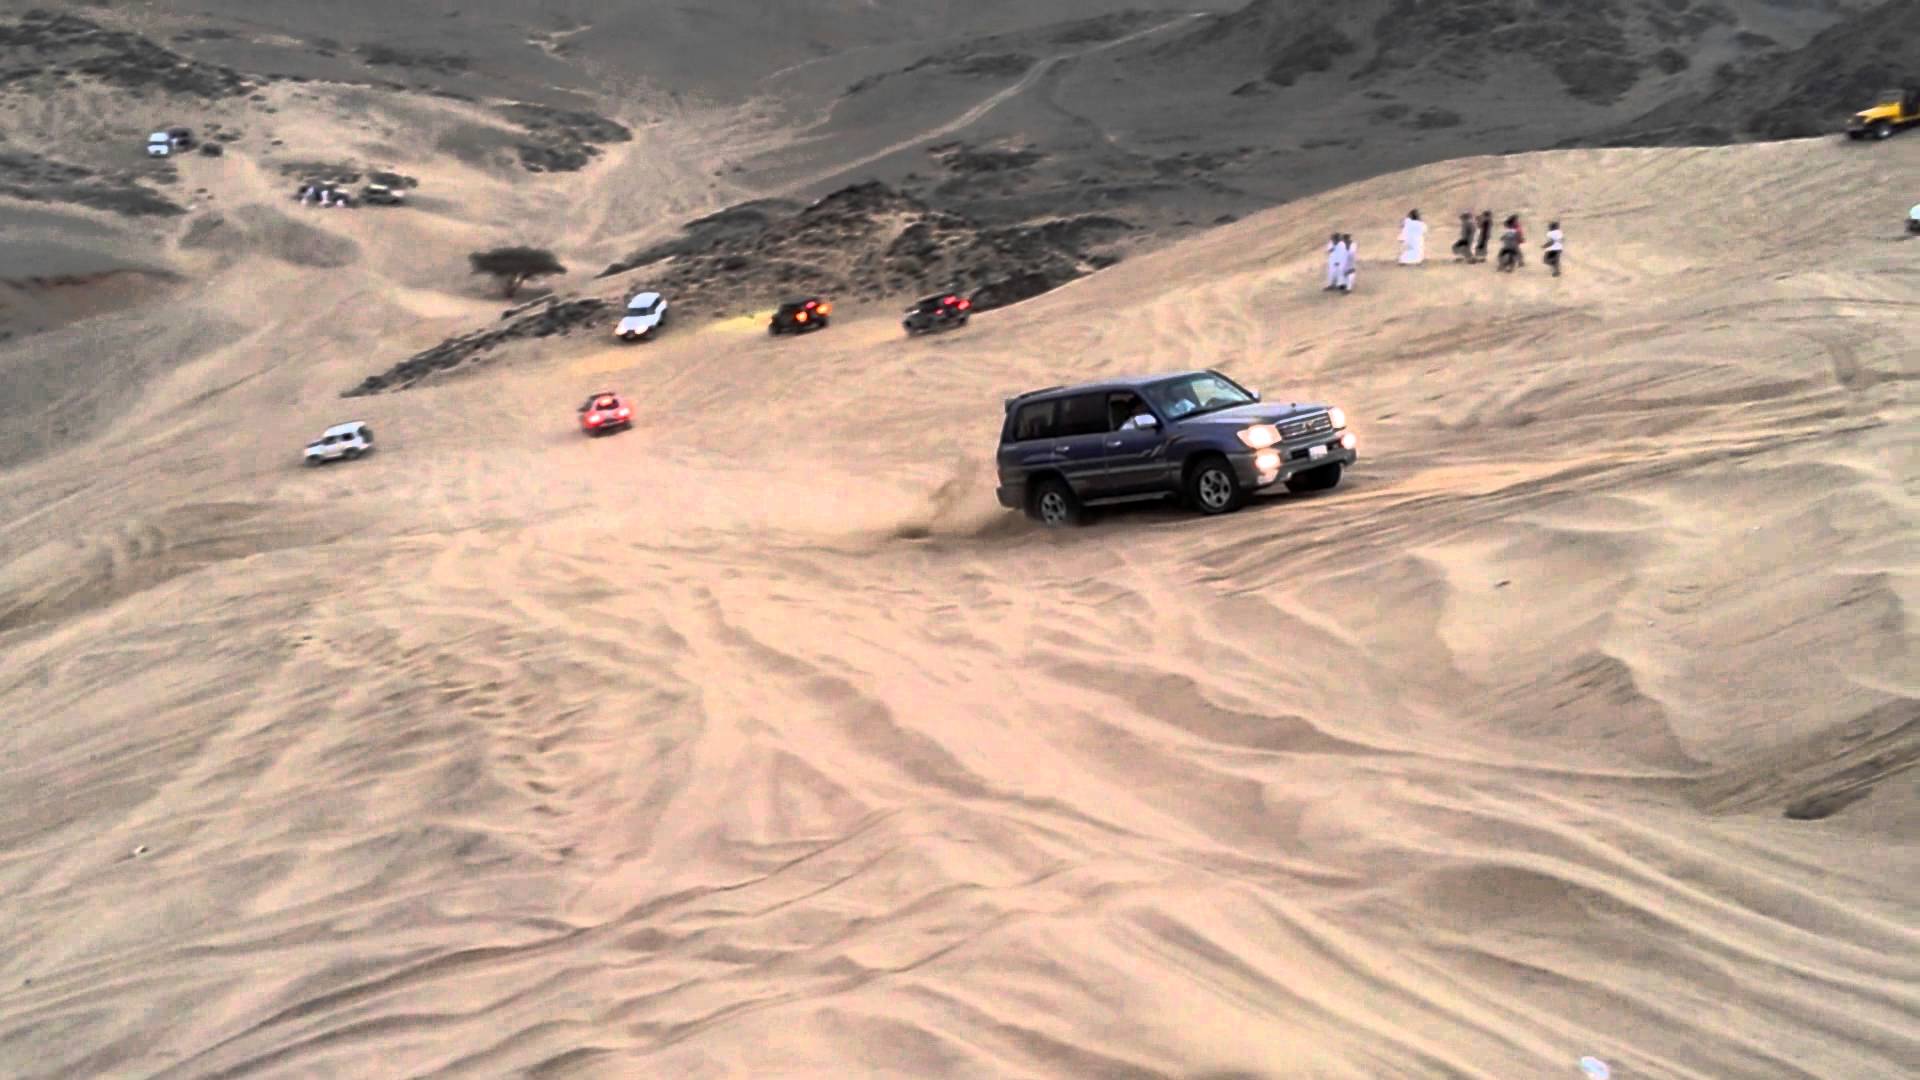 Dune Bashing Jeddah, Saudi Arabia. - YouTube